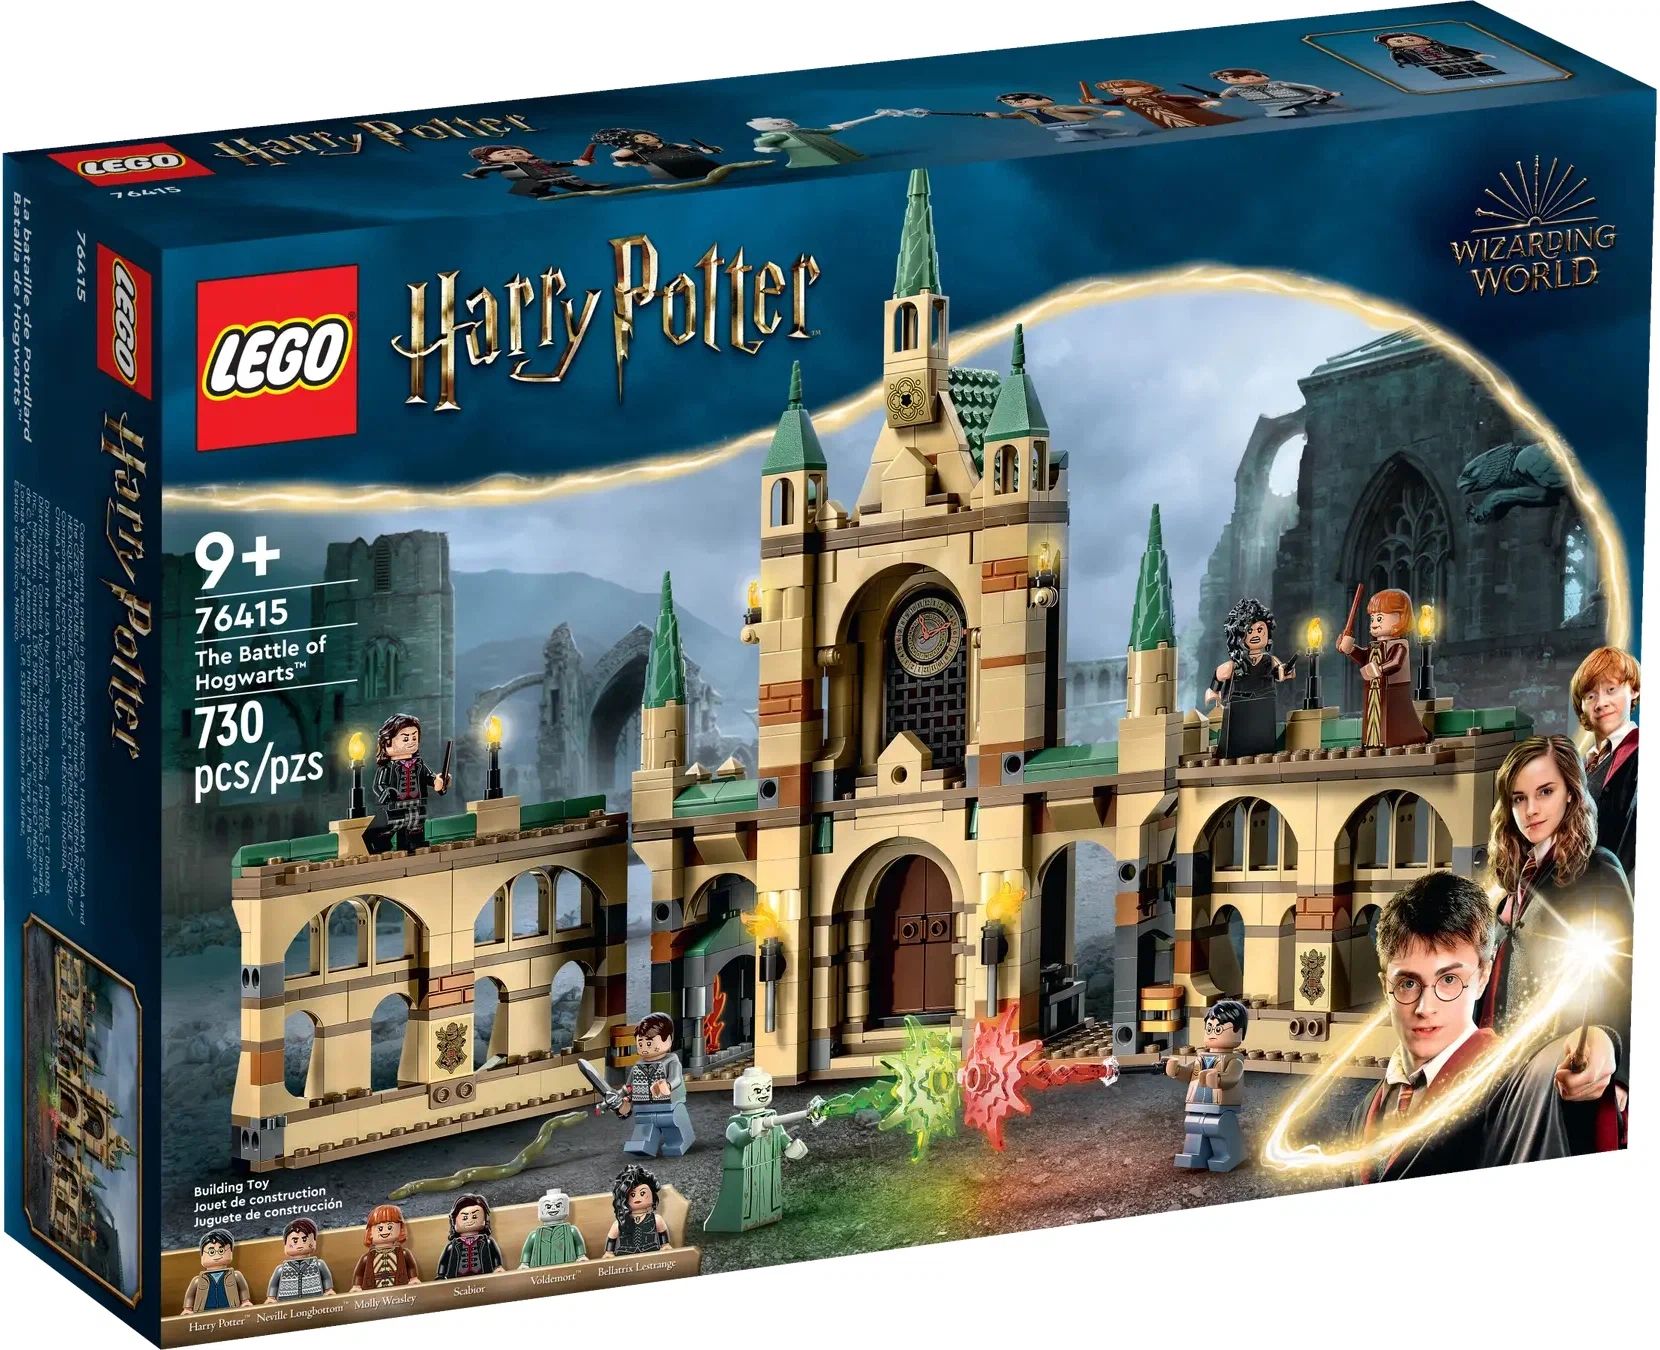 Конструктор LEGO Harry Potter Битва за Хогвартс, 730 деталей, 9+, 76415 конструктор lego harry potter астрономическая башня хогвартса 75969